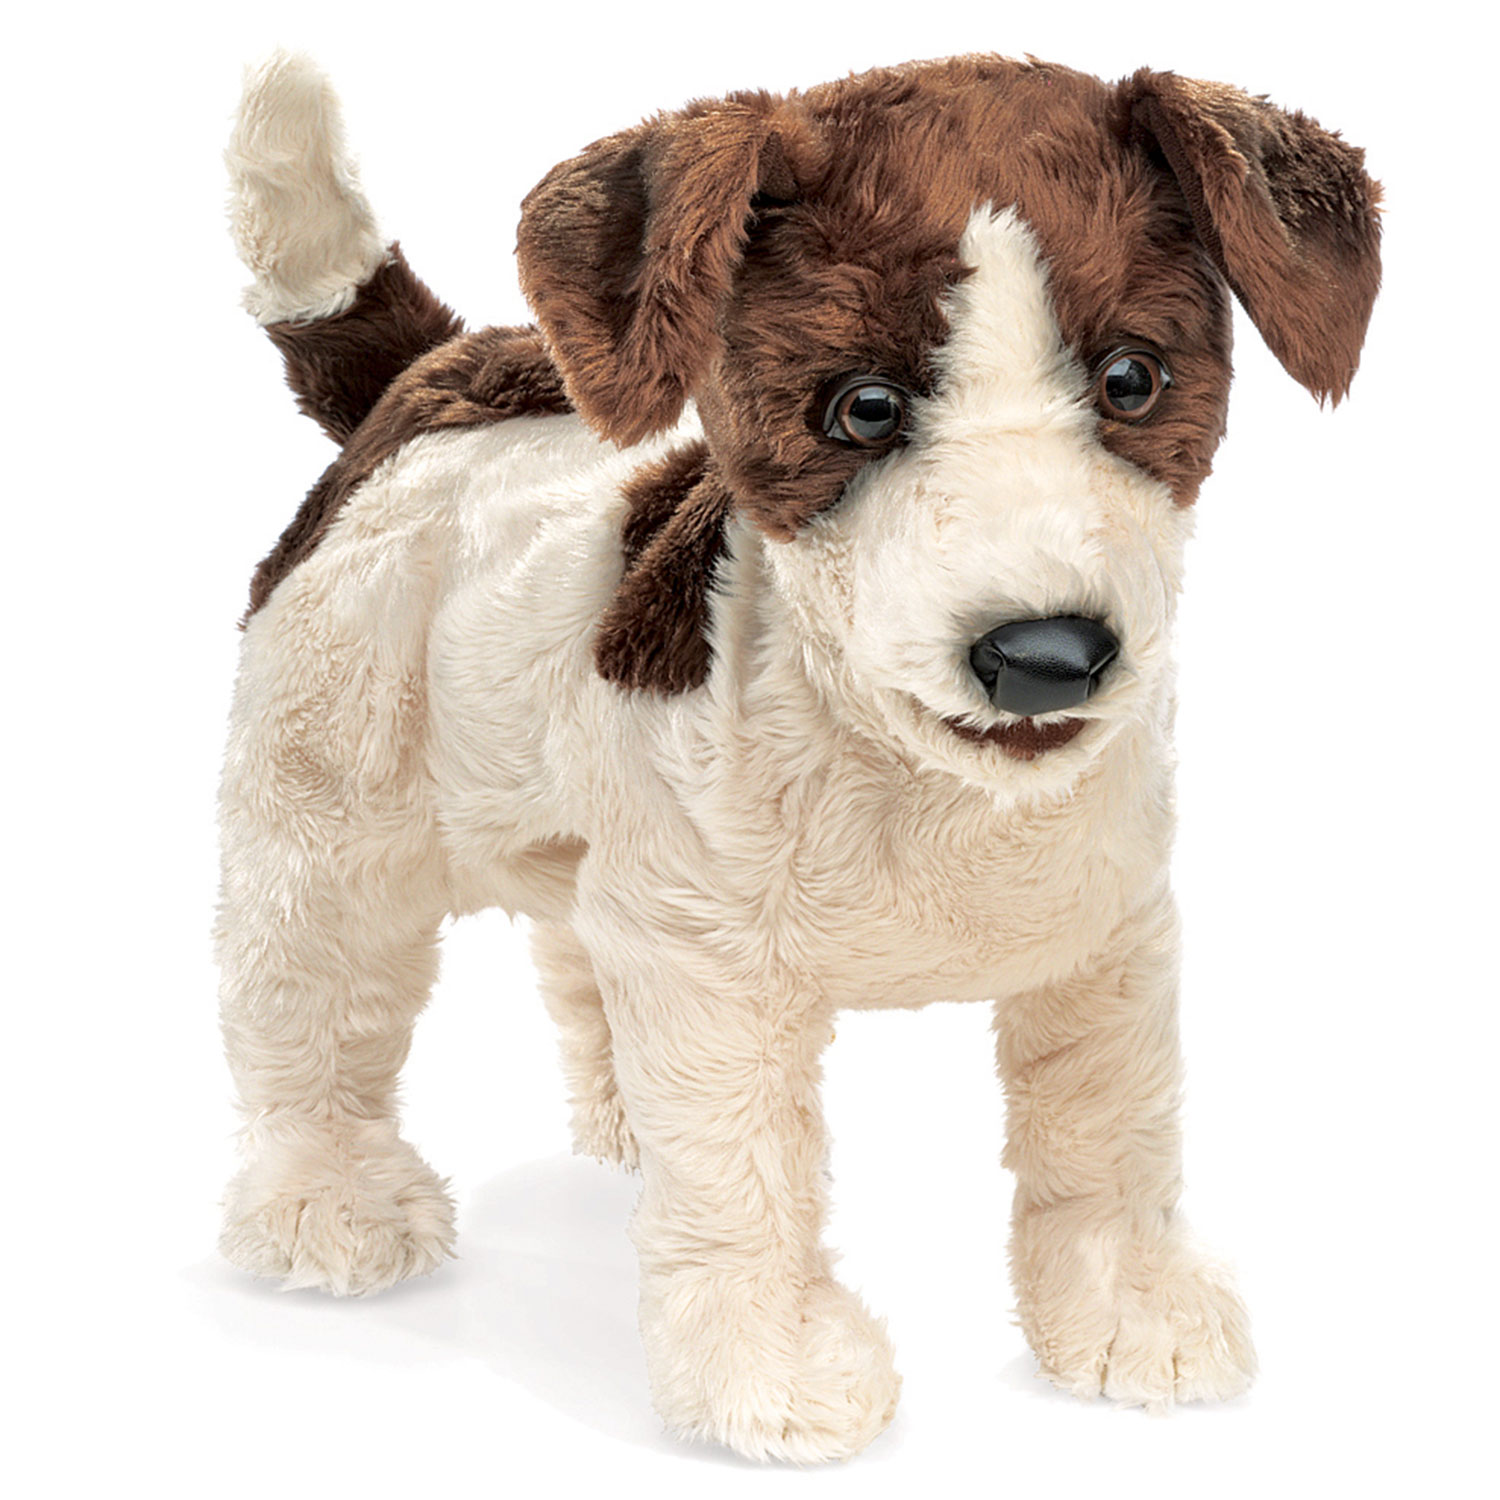 Jack Russell Terrier / Jack Russell Terrier